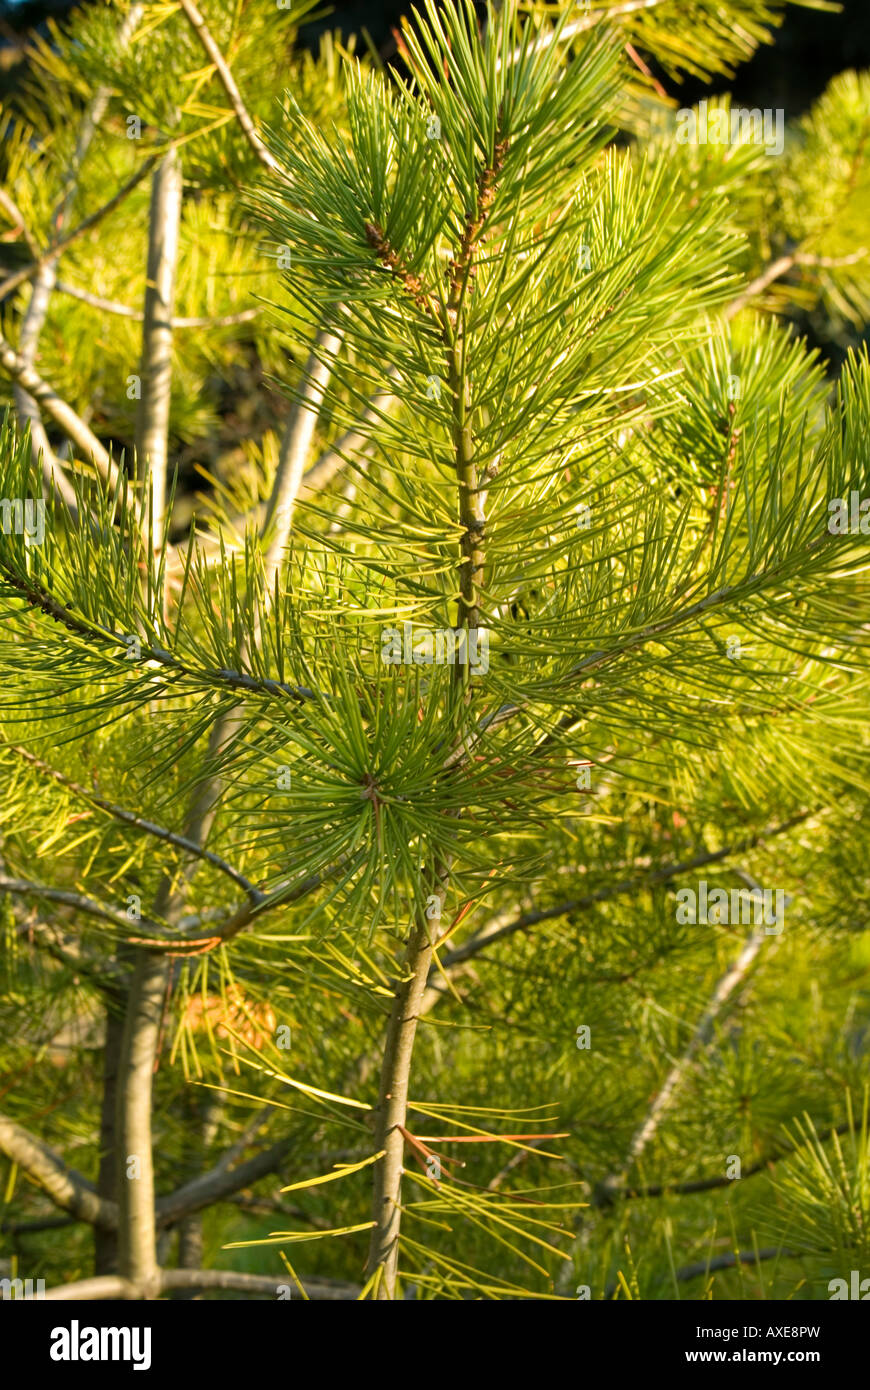 Mountain Pine, Pinus mugo, close-up Stock Photo